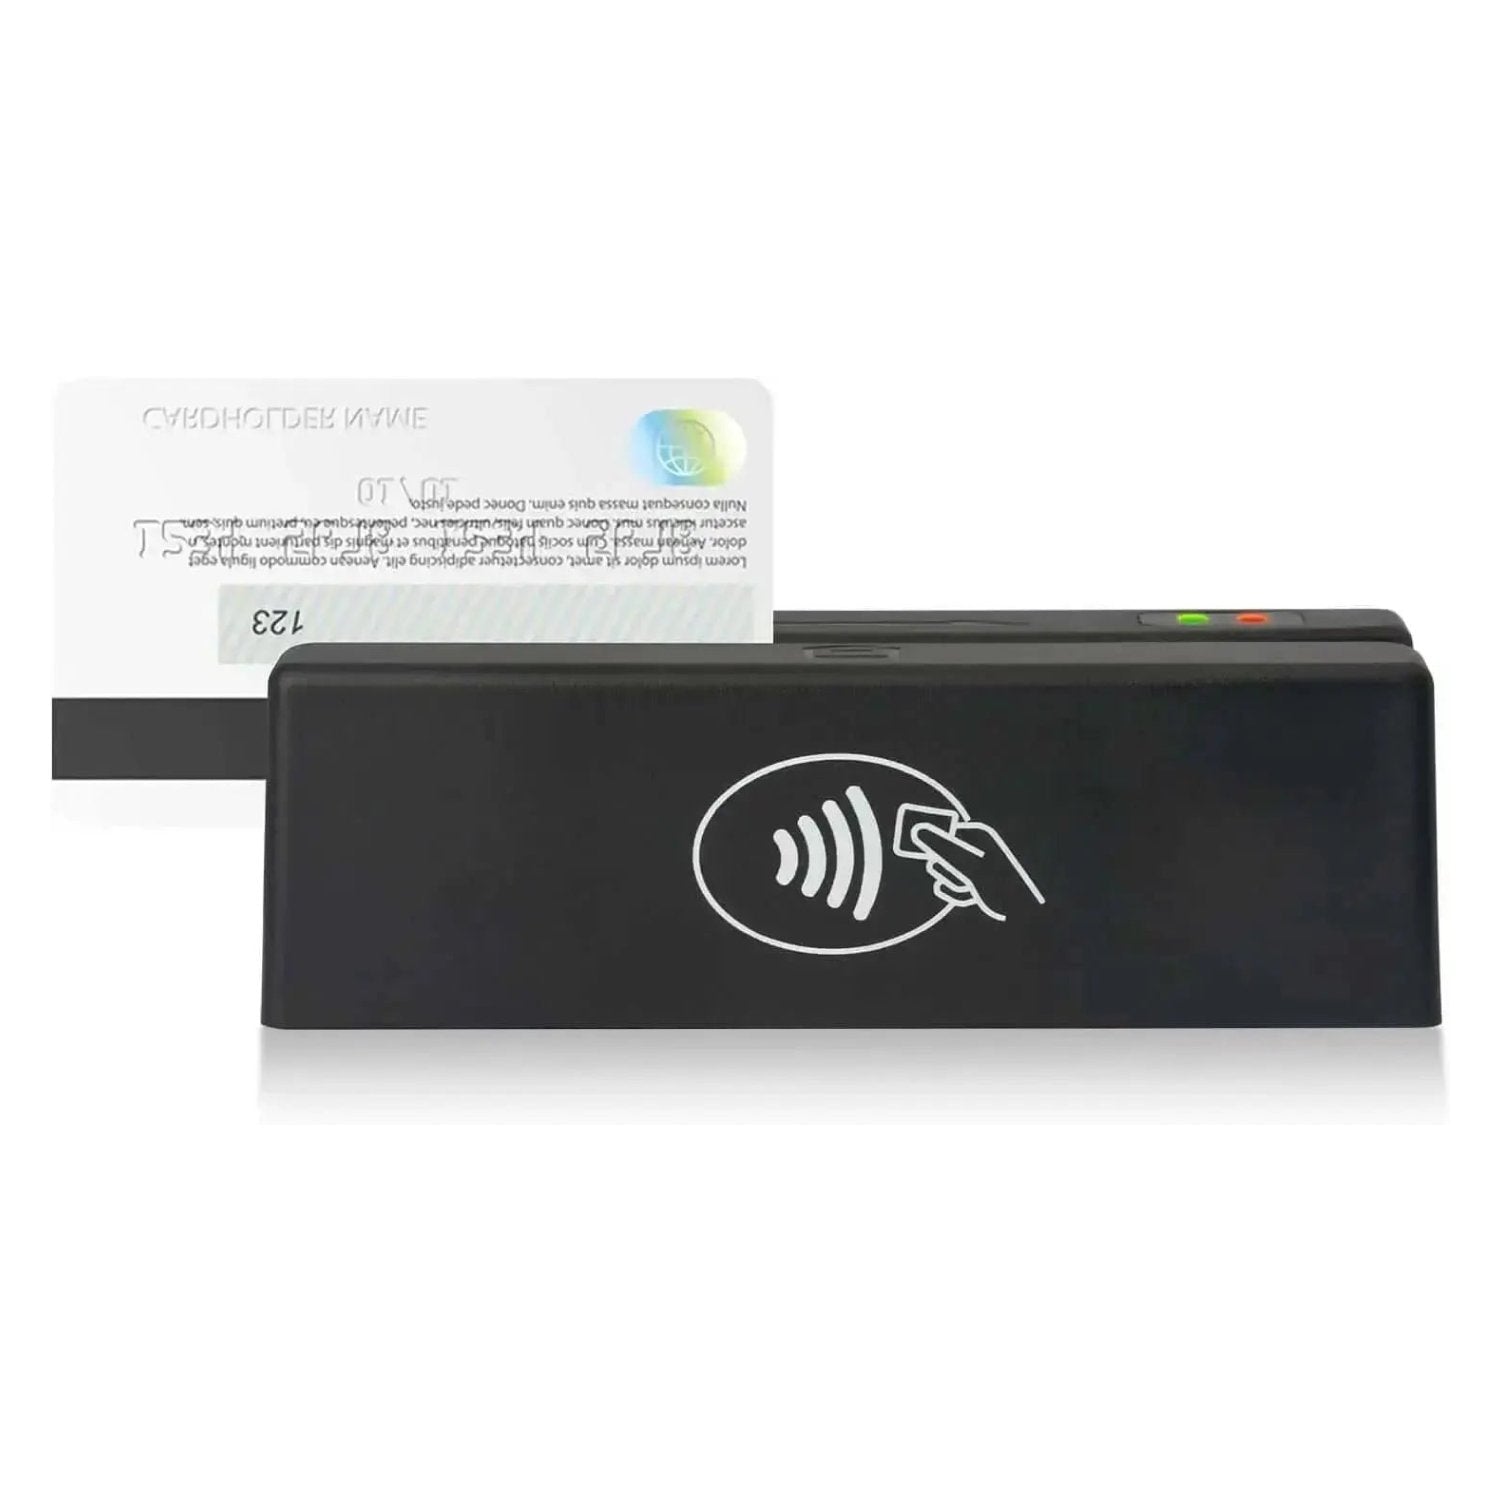 MSR98RF 13.56Mhz NFC MagStripe Reader